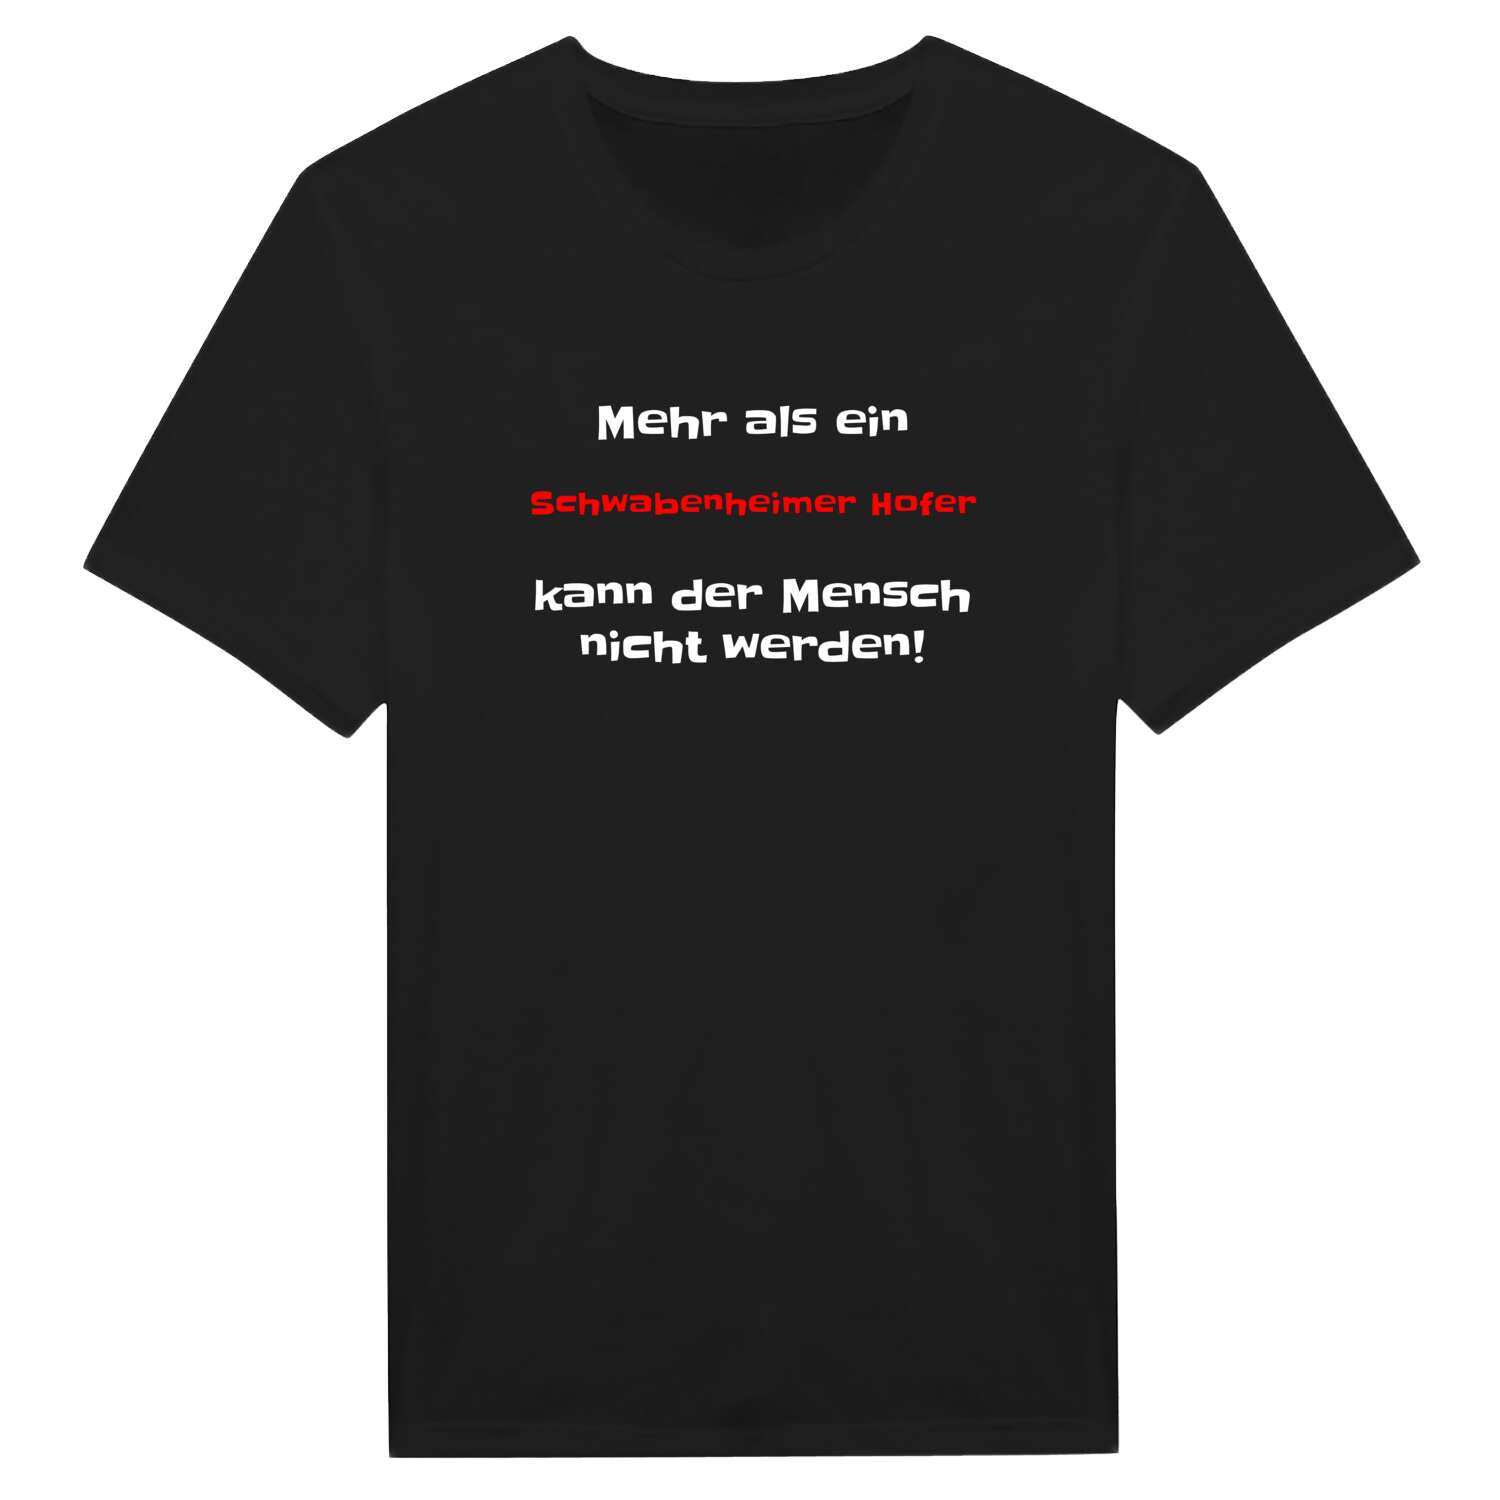 Schwabenheimer Hof T-Shirt »Mehr als ein«